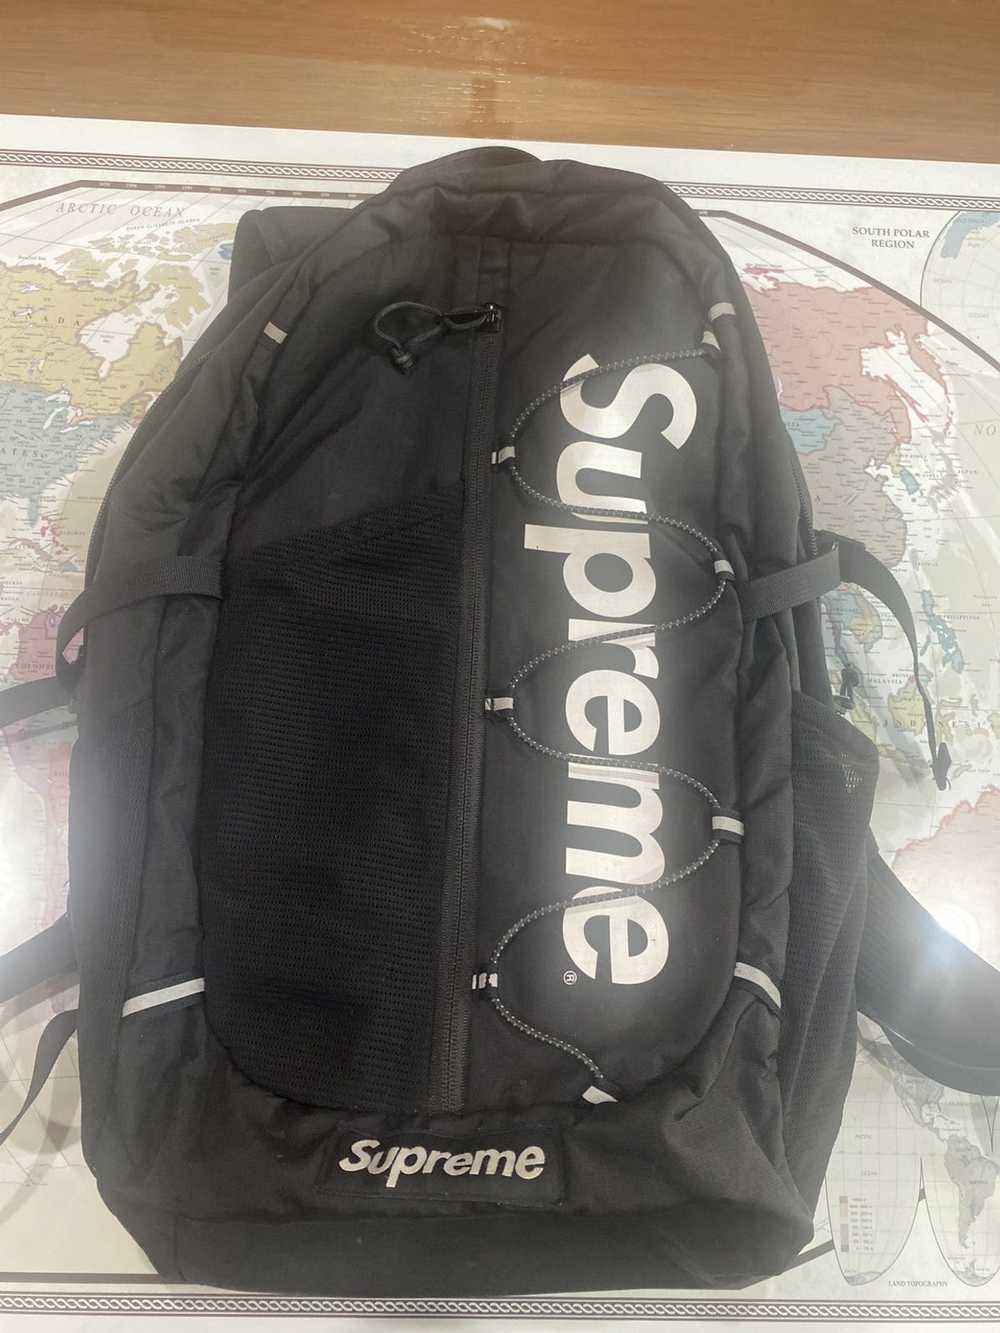 Supreme Supreme SS17 Backpack - image 2